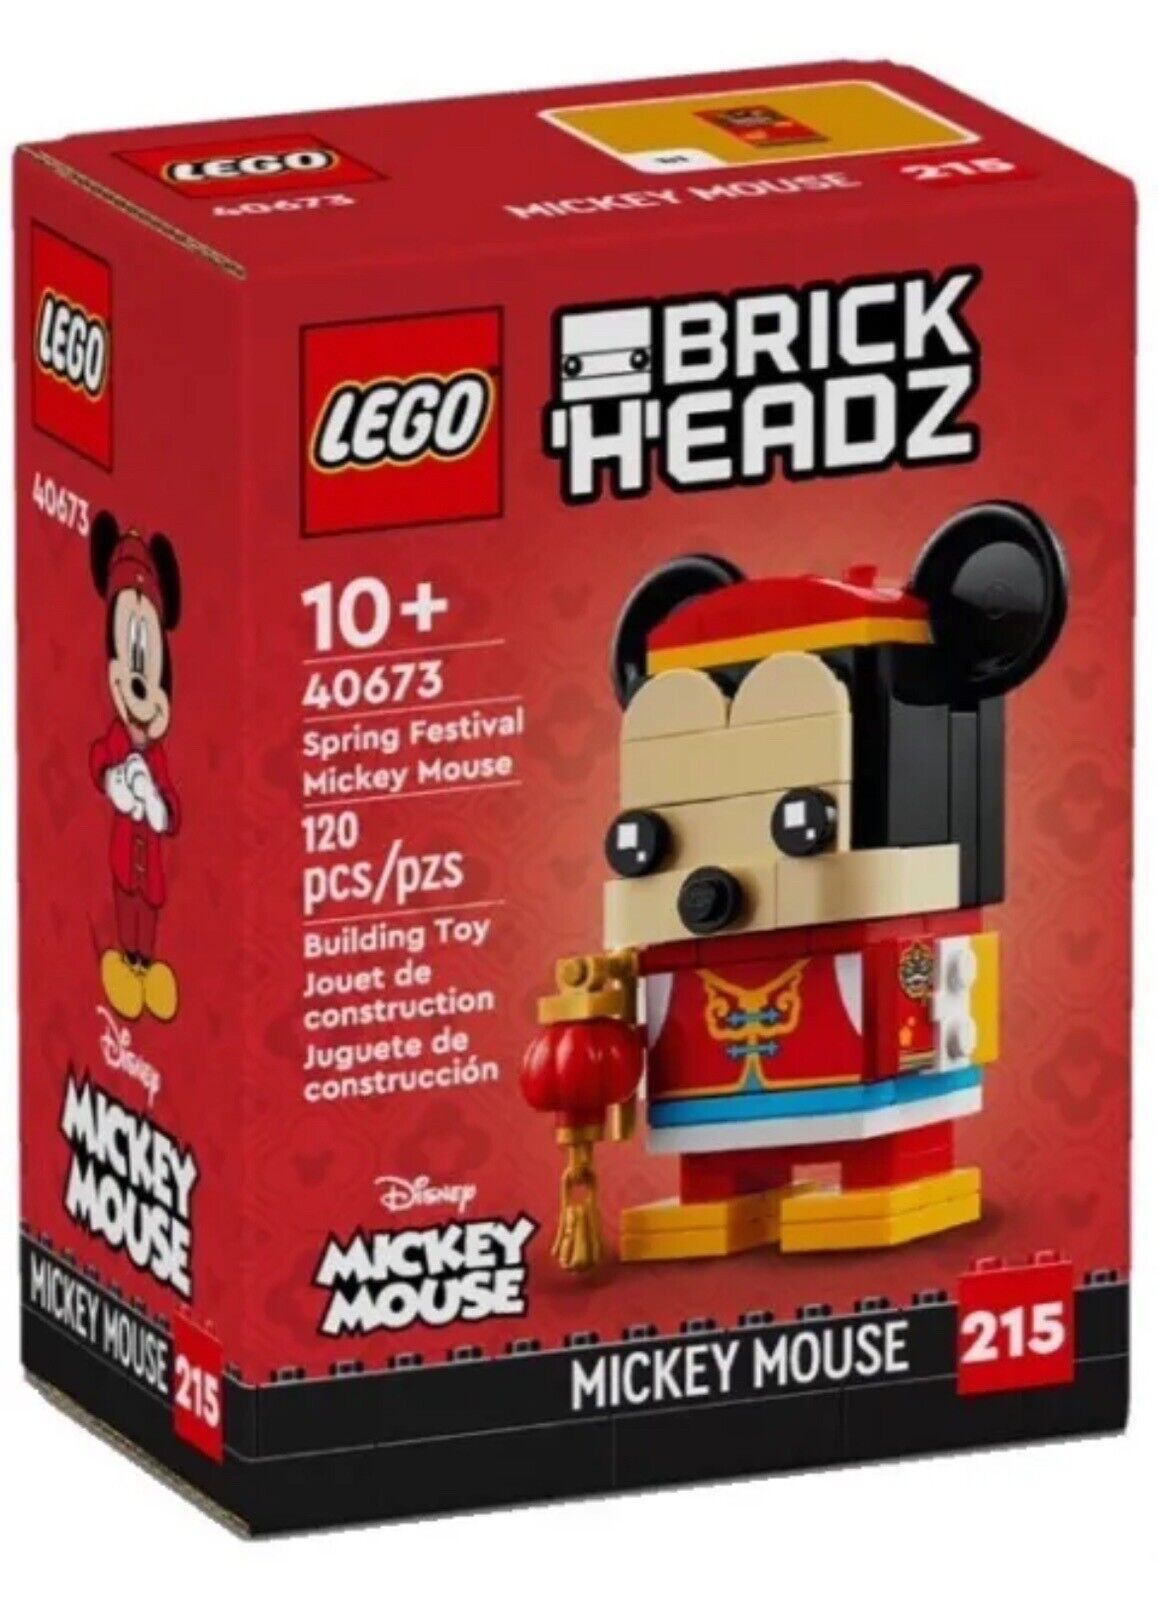 Конструктор LEGO BrickHeadz Весенний фестиваль Микки Мауса 40673, 120 дет. конструктор lego 31202 disneys mickey mouse